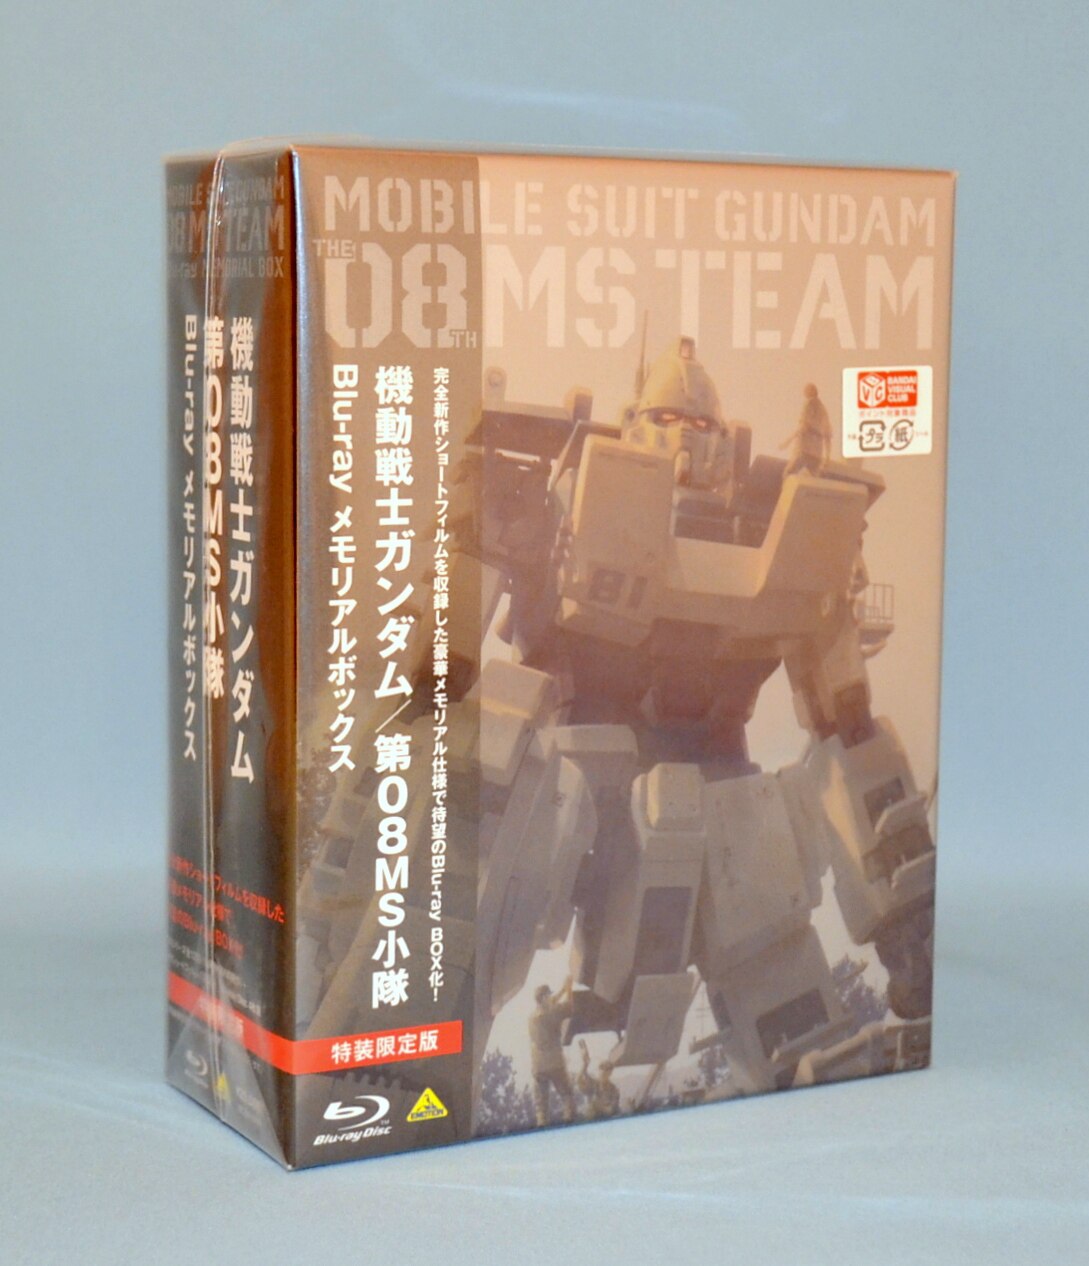 機動戦士ガンダム/第08MS小隊 Blu-ray メモリアルボックス 特装限定版